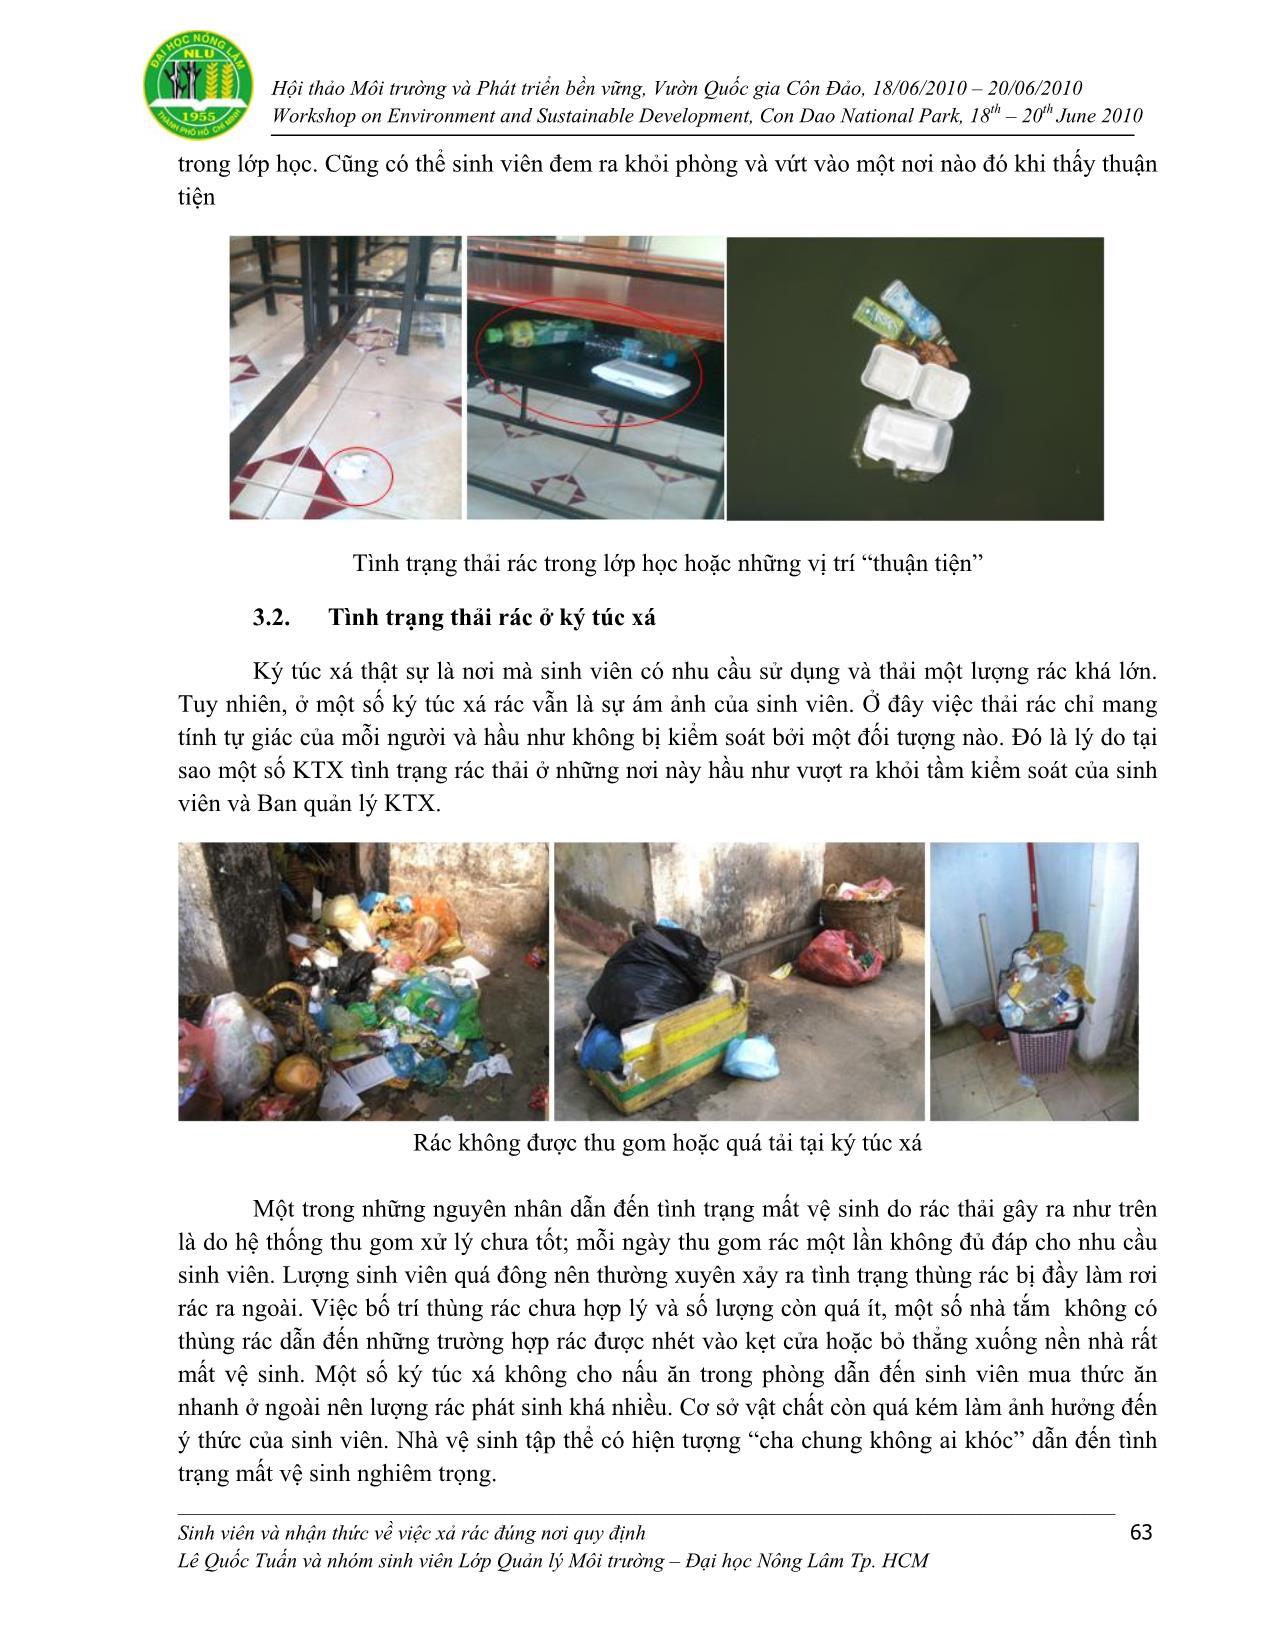 Sinh viên và nhận thức về việc xả rác đúng nơi quy định trang 5